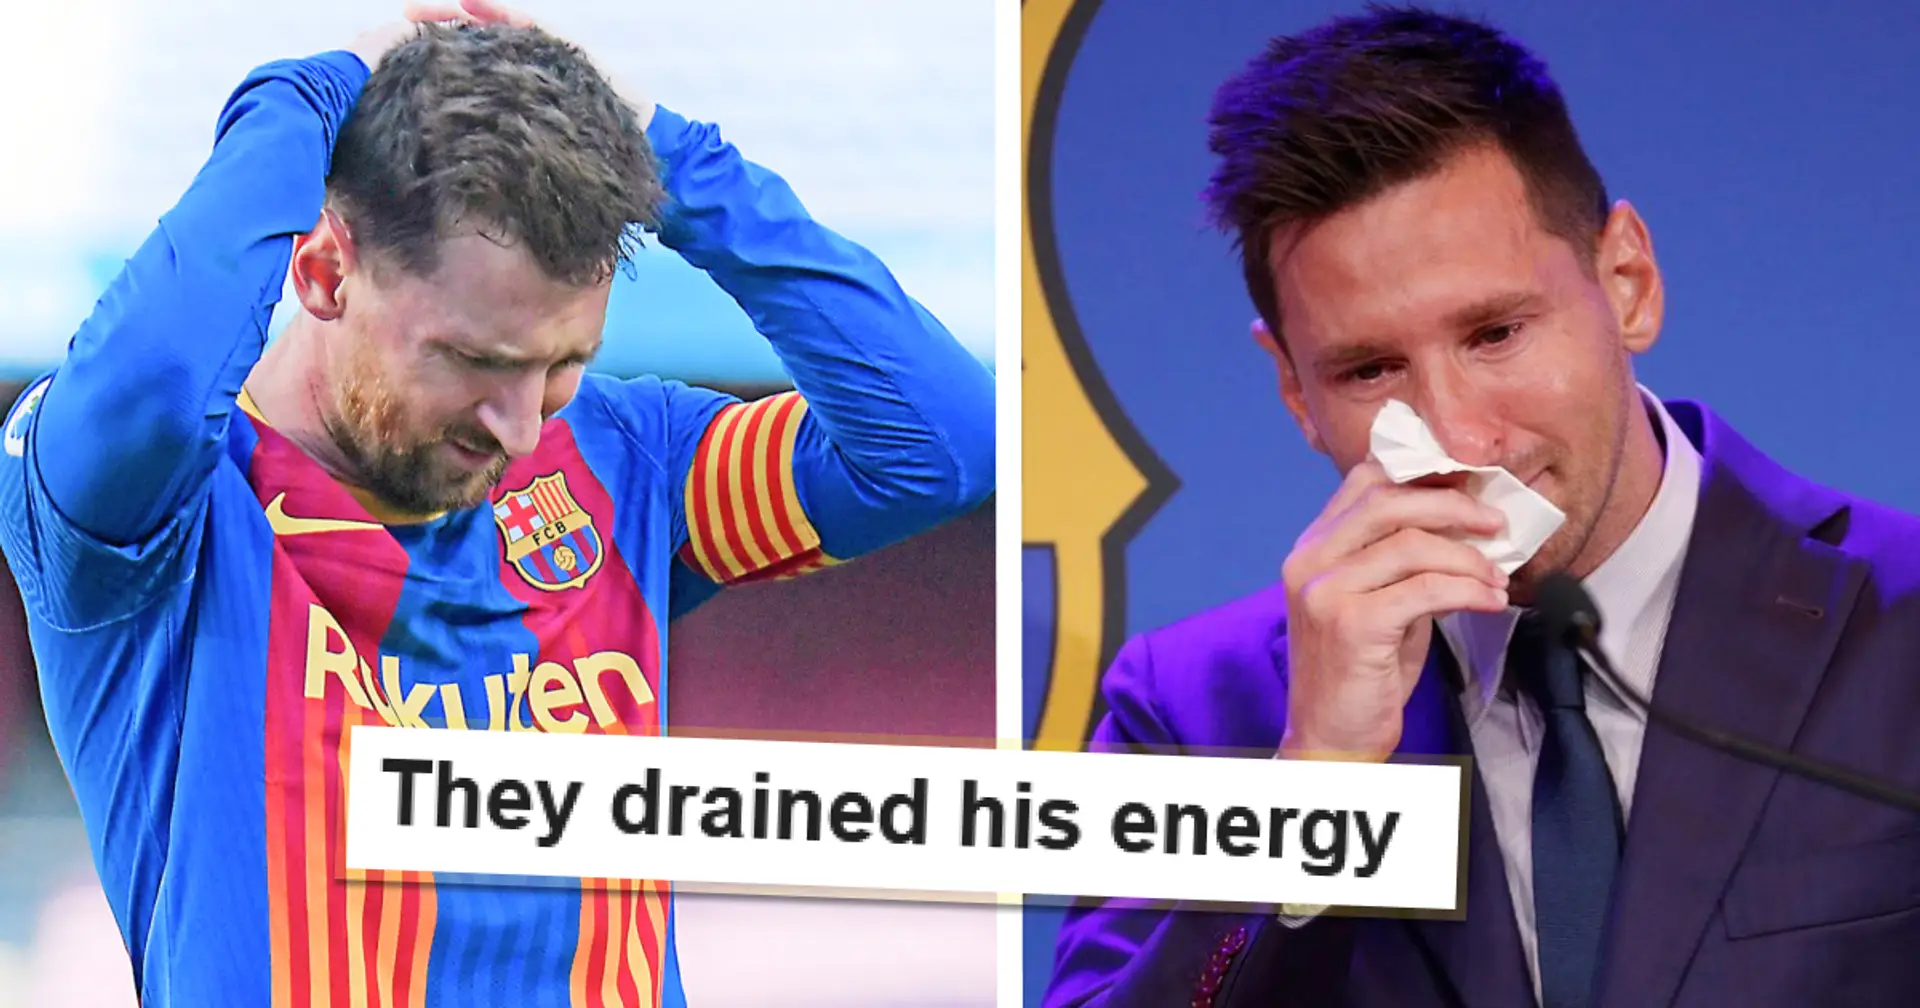 "Er hat seine Zeit verschwendet": Einige Fans behaupten, der Abschied von Barcelona habe Messi geholfen, die Weltmeisterschaft zu gewinnen